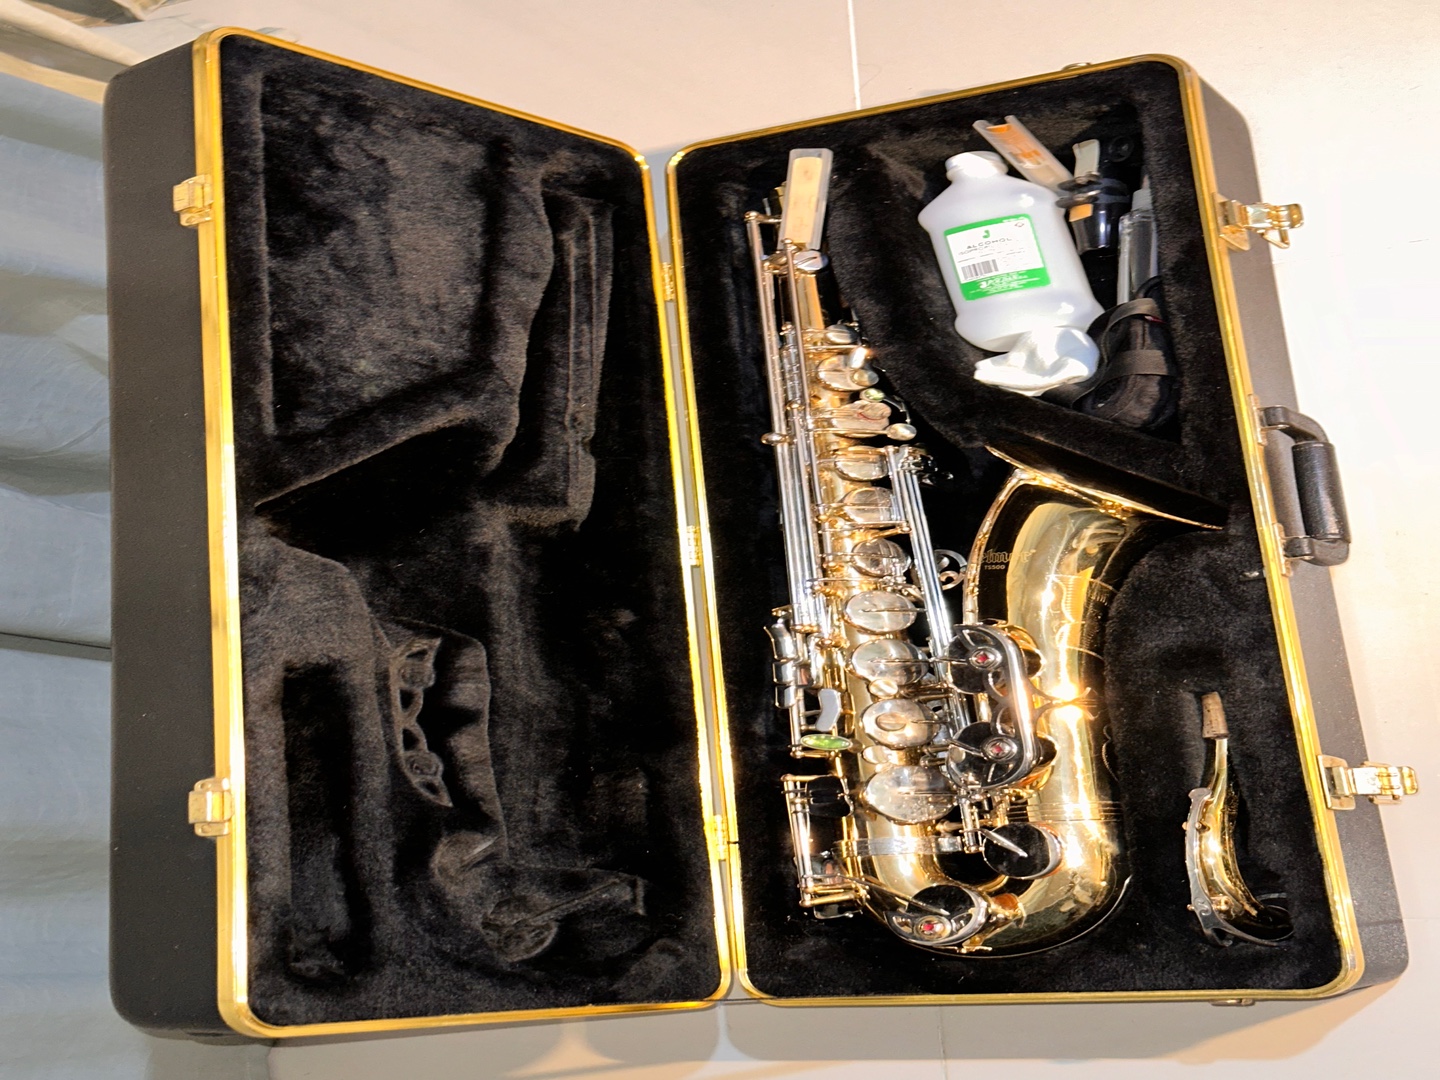 instrumentos musicales - Saxofón tenor Selmer. Poco uso, bien conservado, incluye accesorios y libros. 2